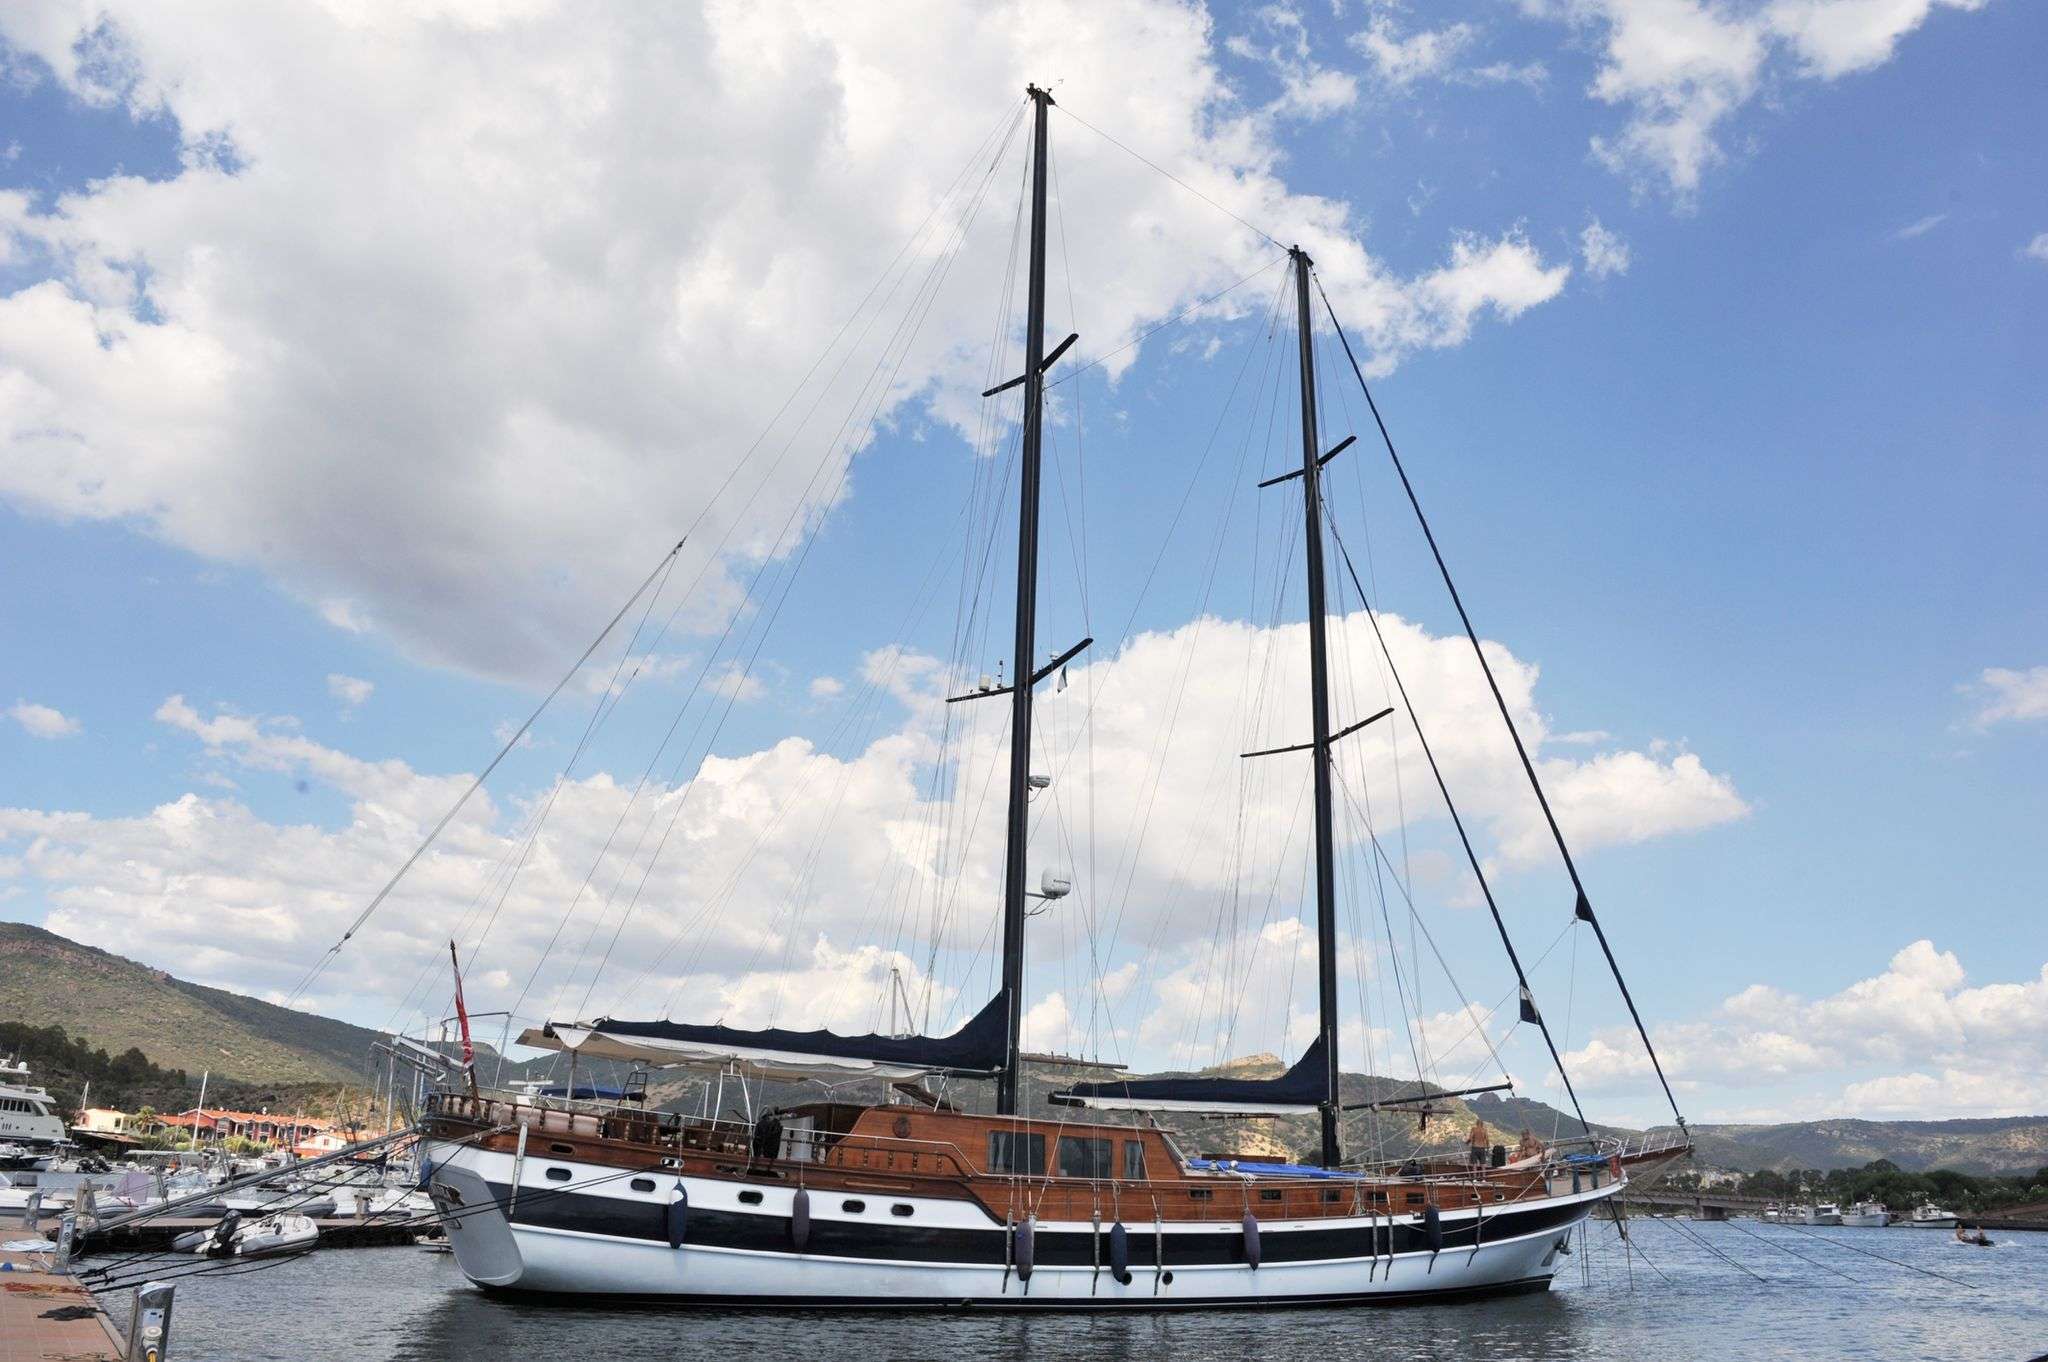 Elianora  - Yacht Charter Calanova & Boat hire in W. Med -Naples/Sicily, W. Med -Riviera/Cors/Sard., W. Med - Spain/Balearics 1